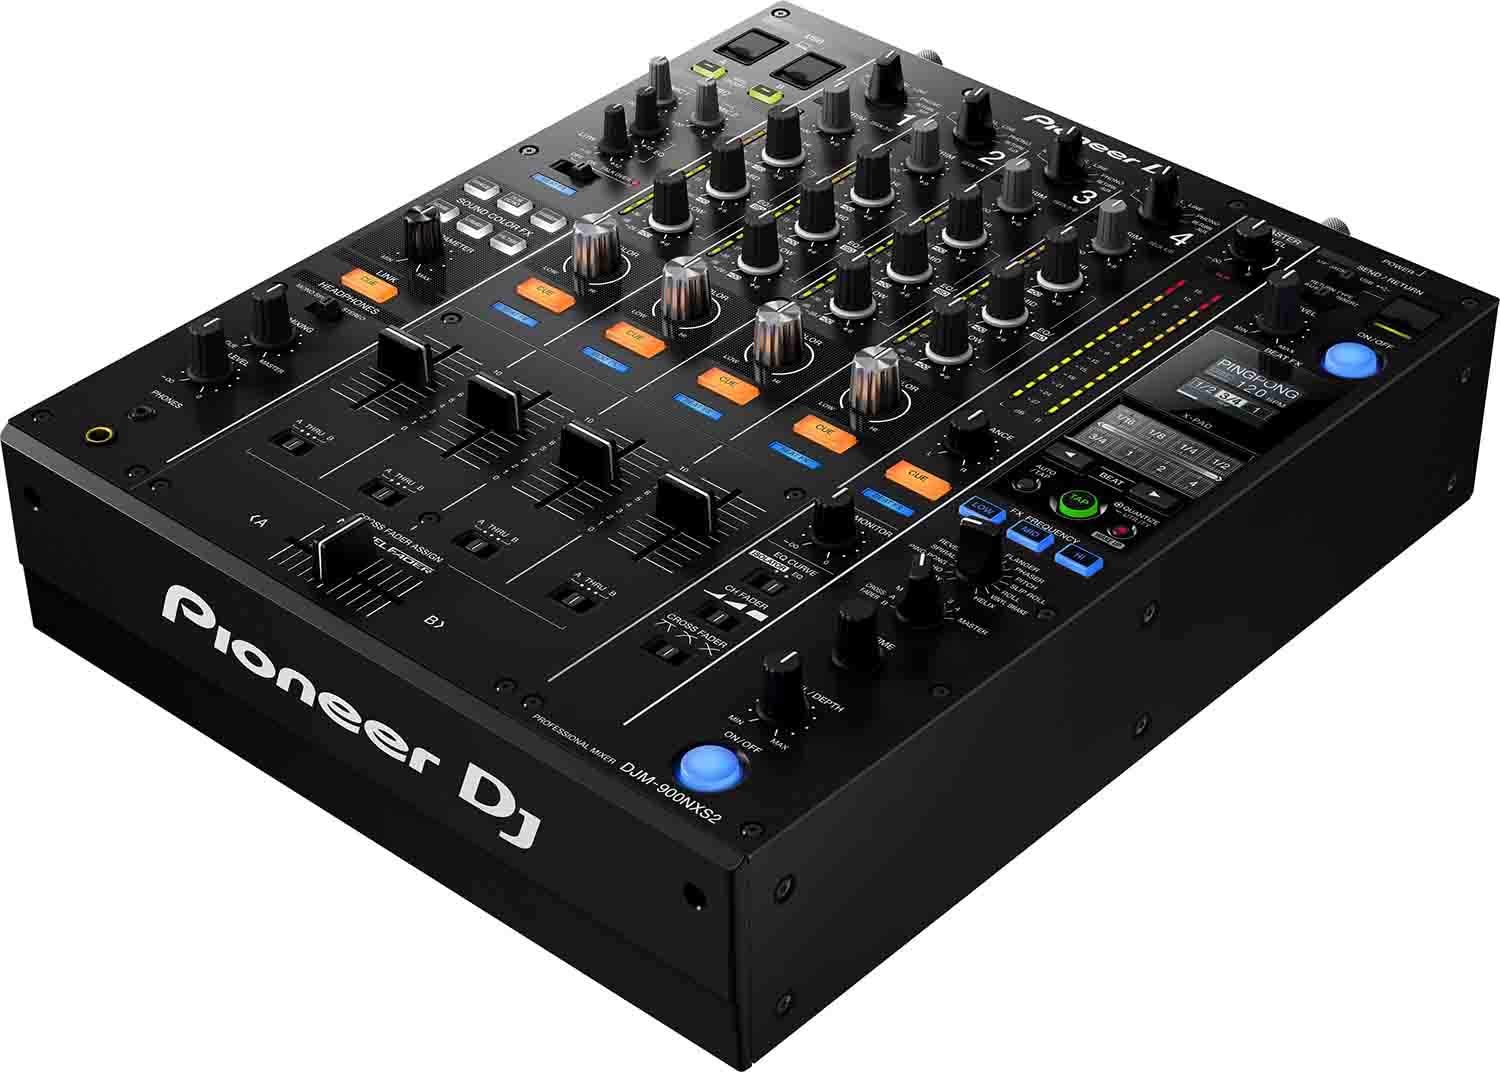 PIONEER DJM-900NXS2 4 CHANNEL PROFESSIONAL DJ MIXER (BLACK), PIONEER, DJ GEAR, pioneer-dj-gear-djm-900nxs2, ZOSO MUSIC SDN BHD